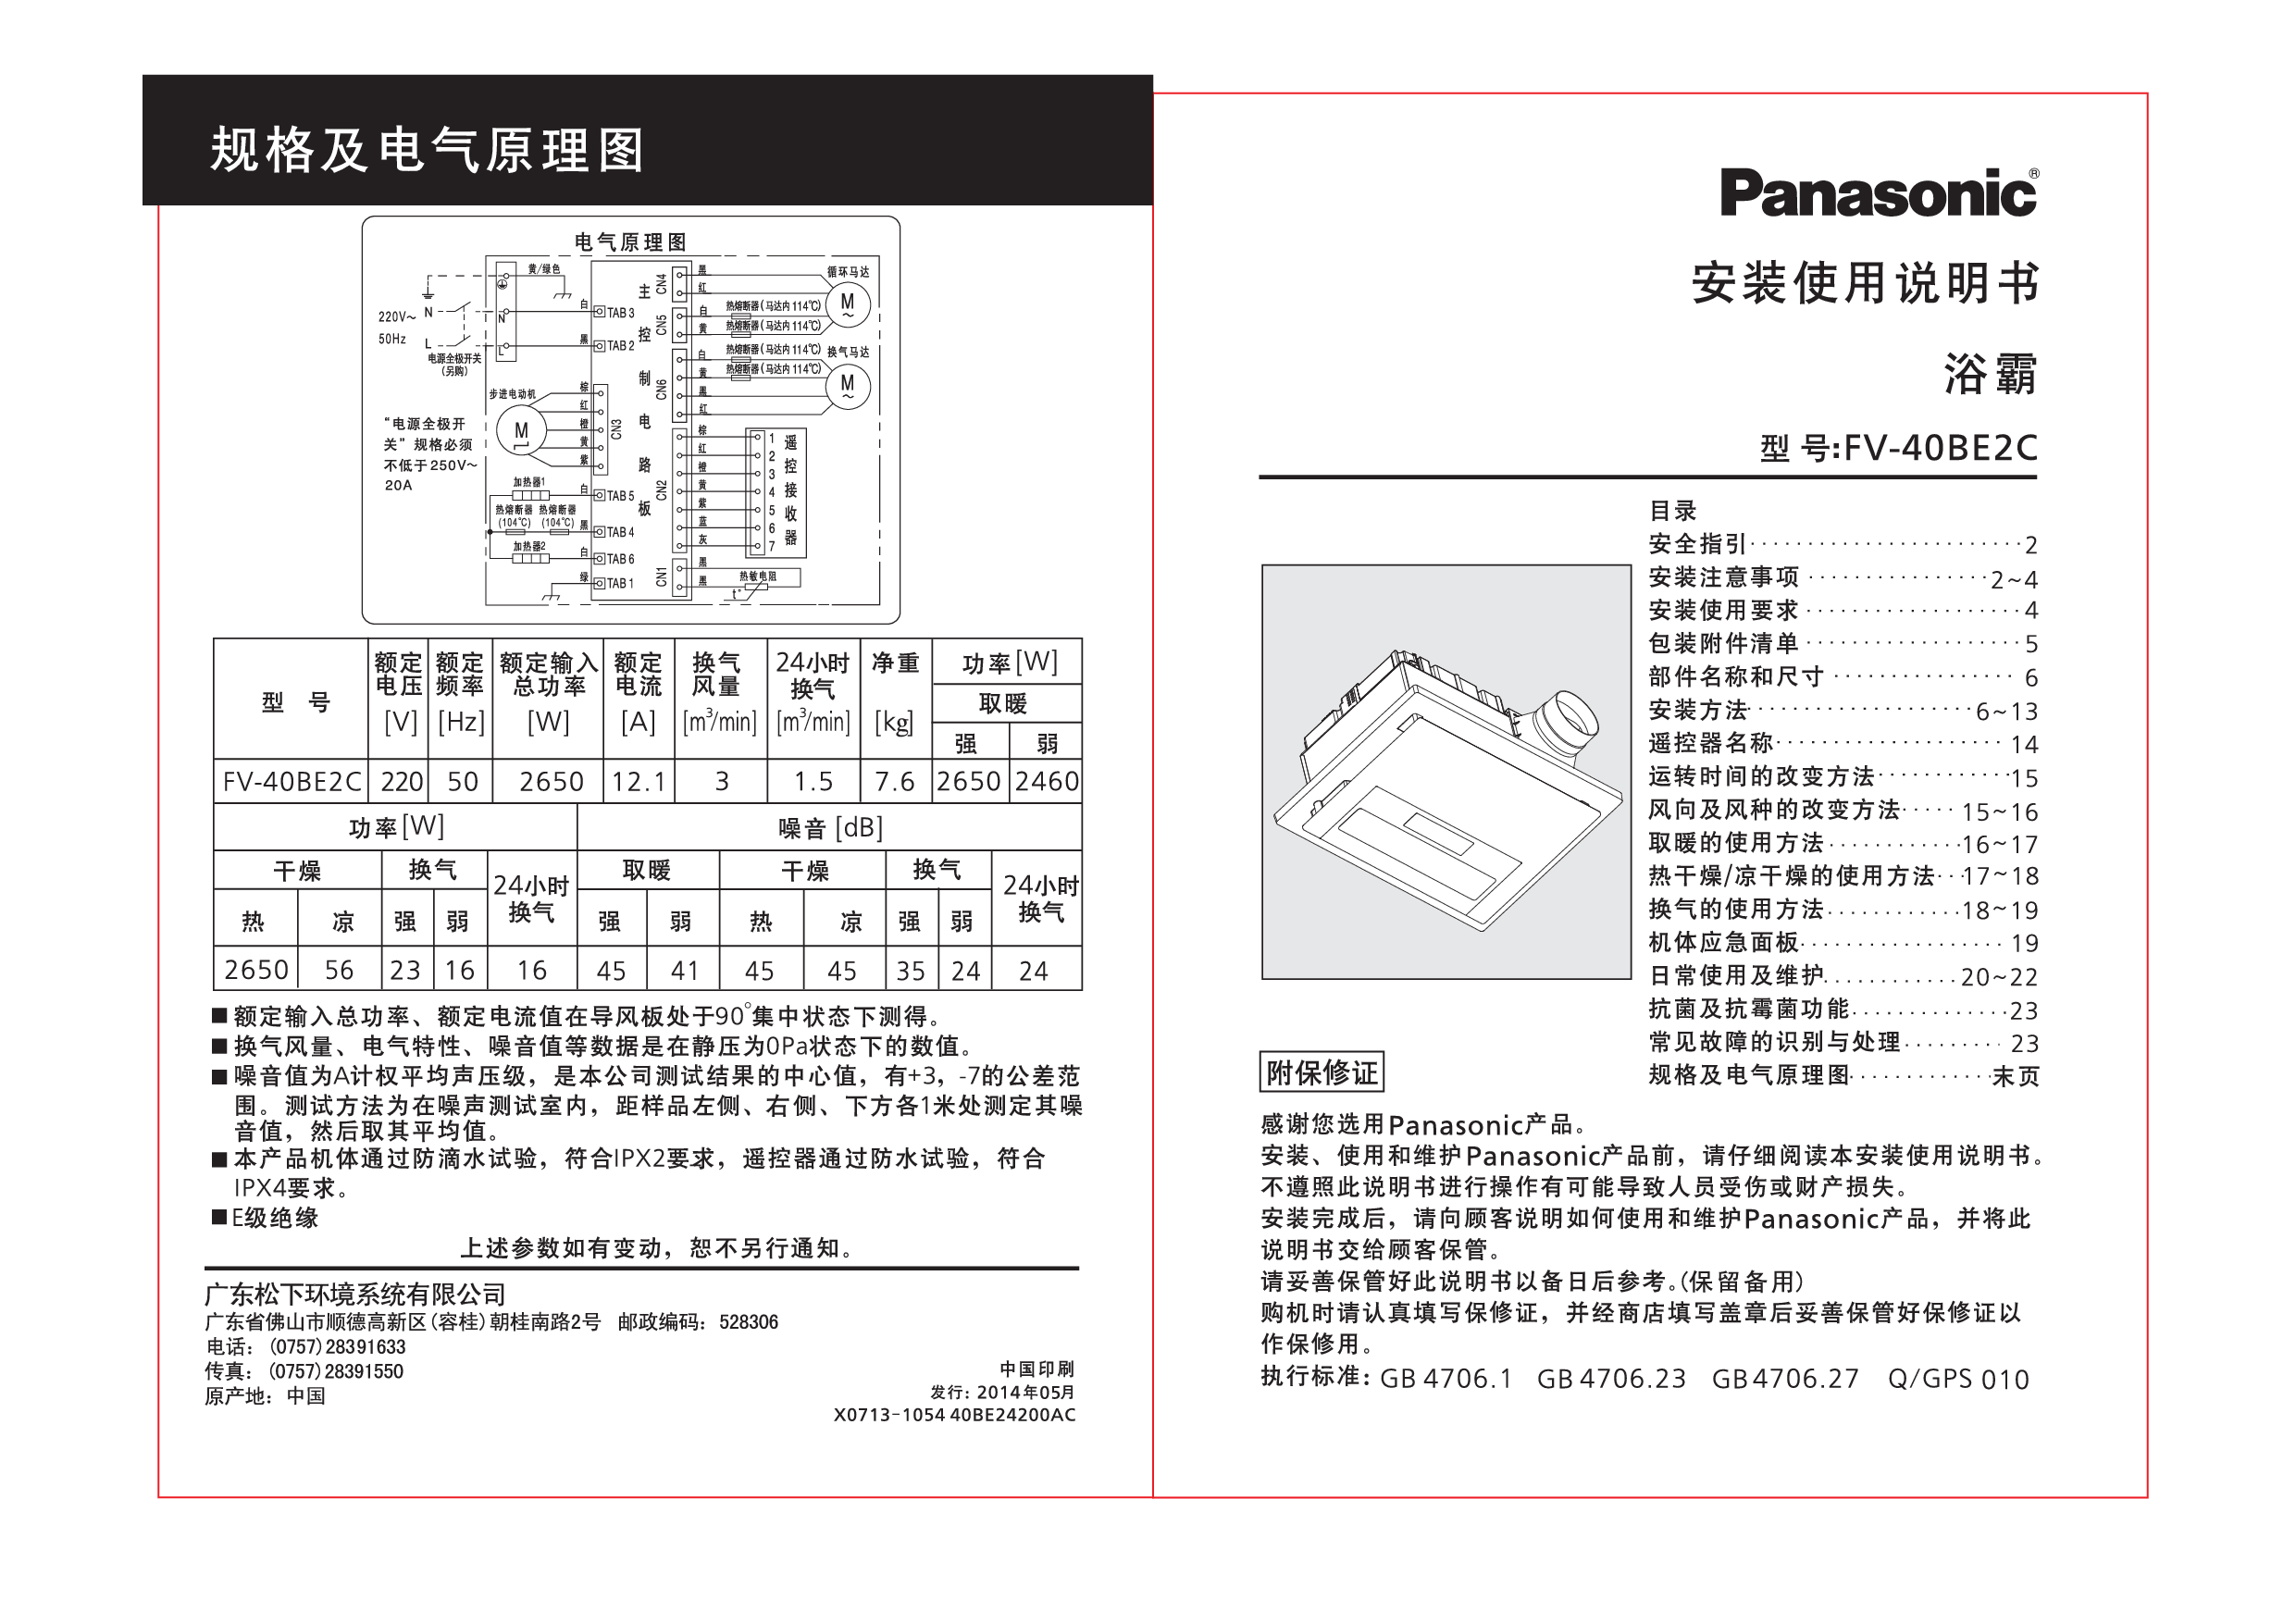 松下 Panasonic FV-40BE2C 安装使用说明书 封面